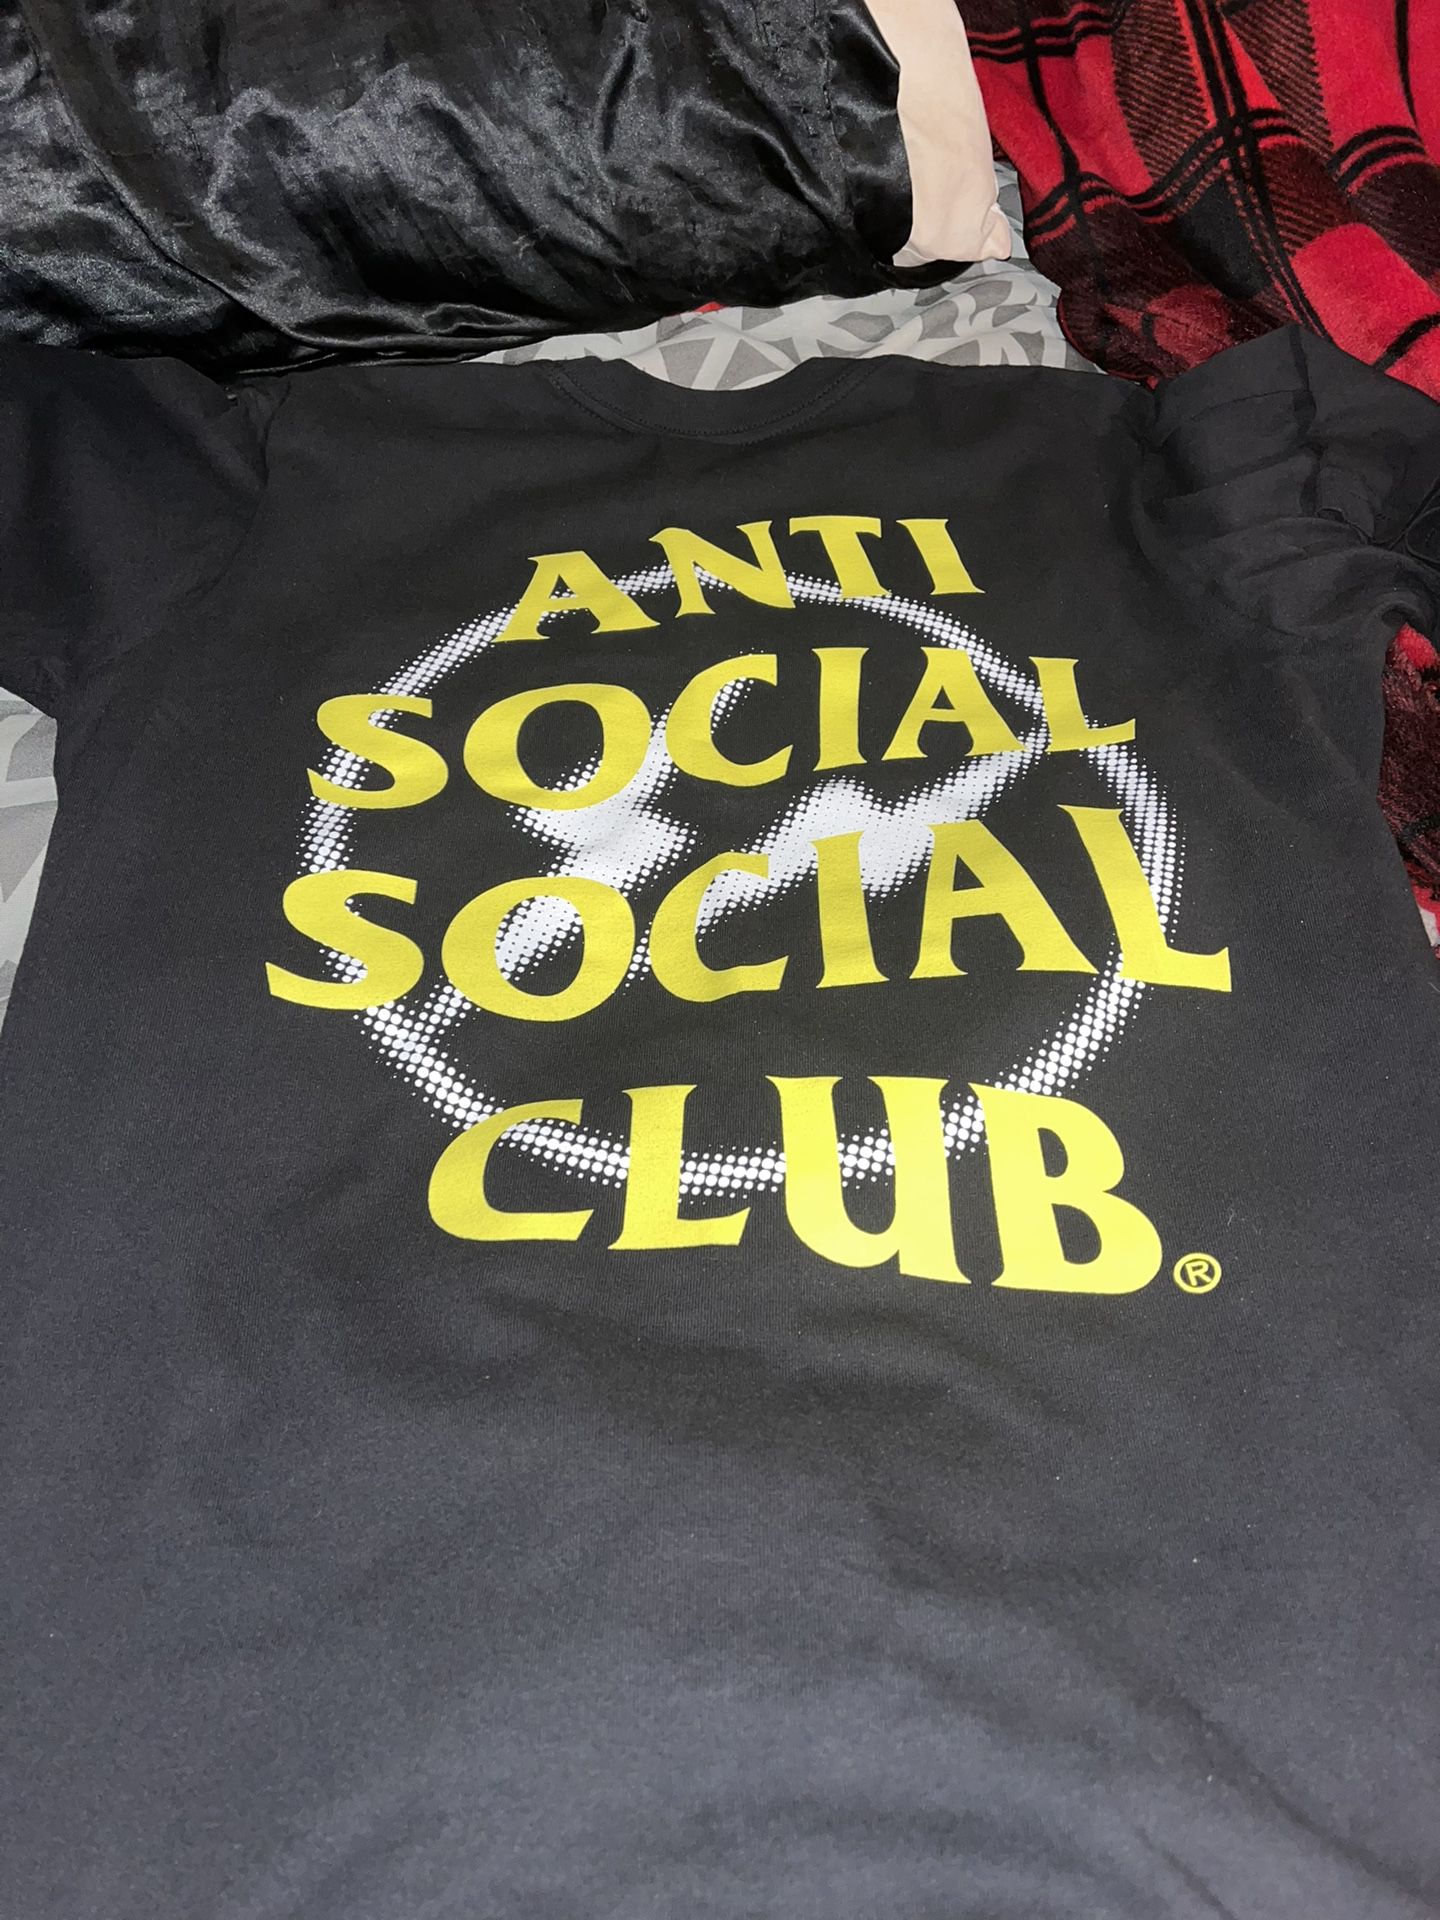 Anti Social Club Shirt